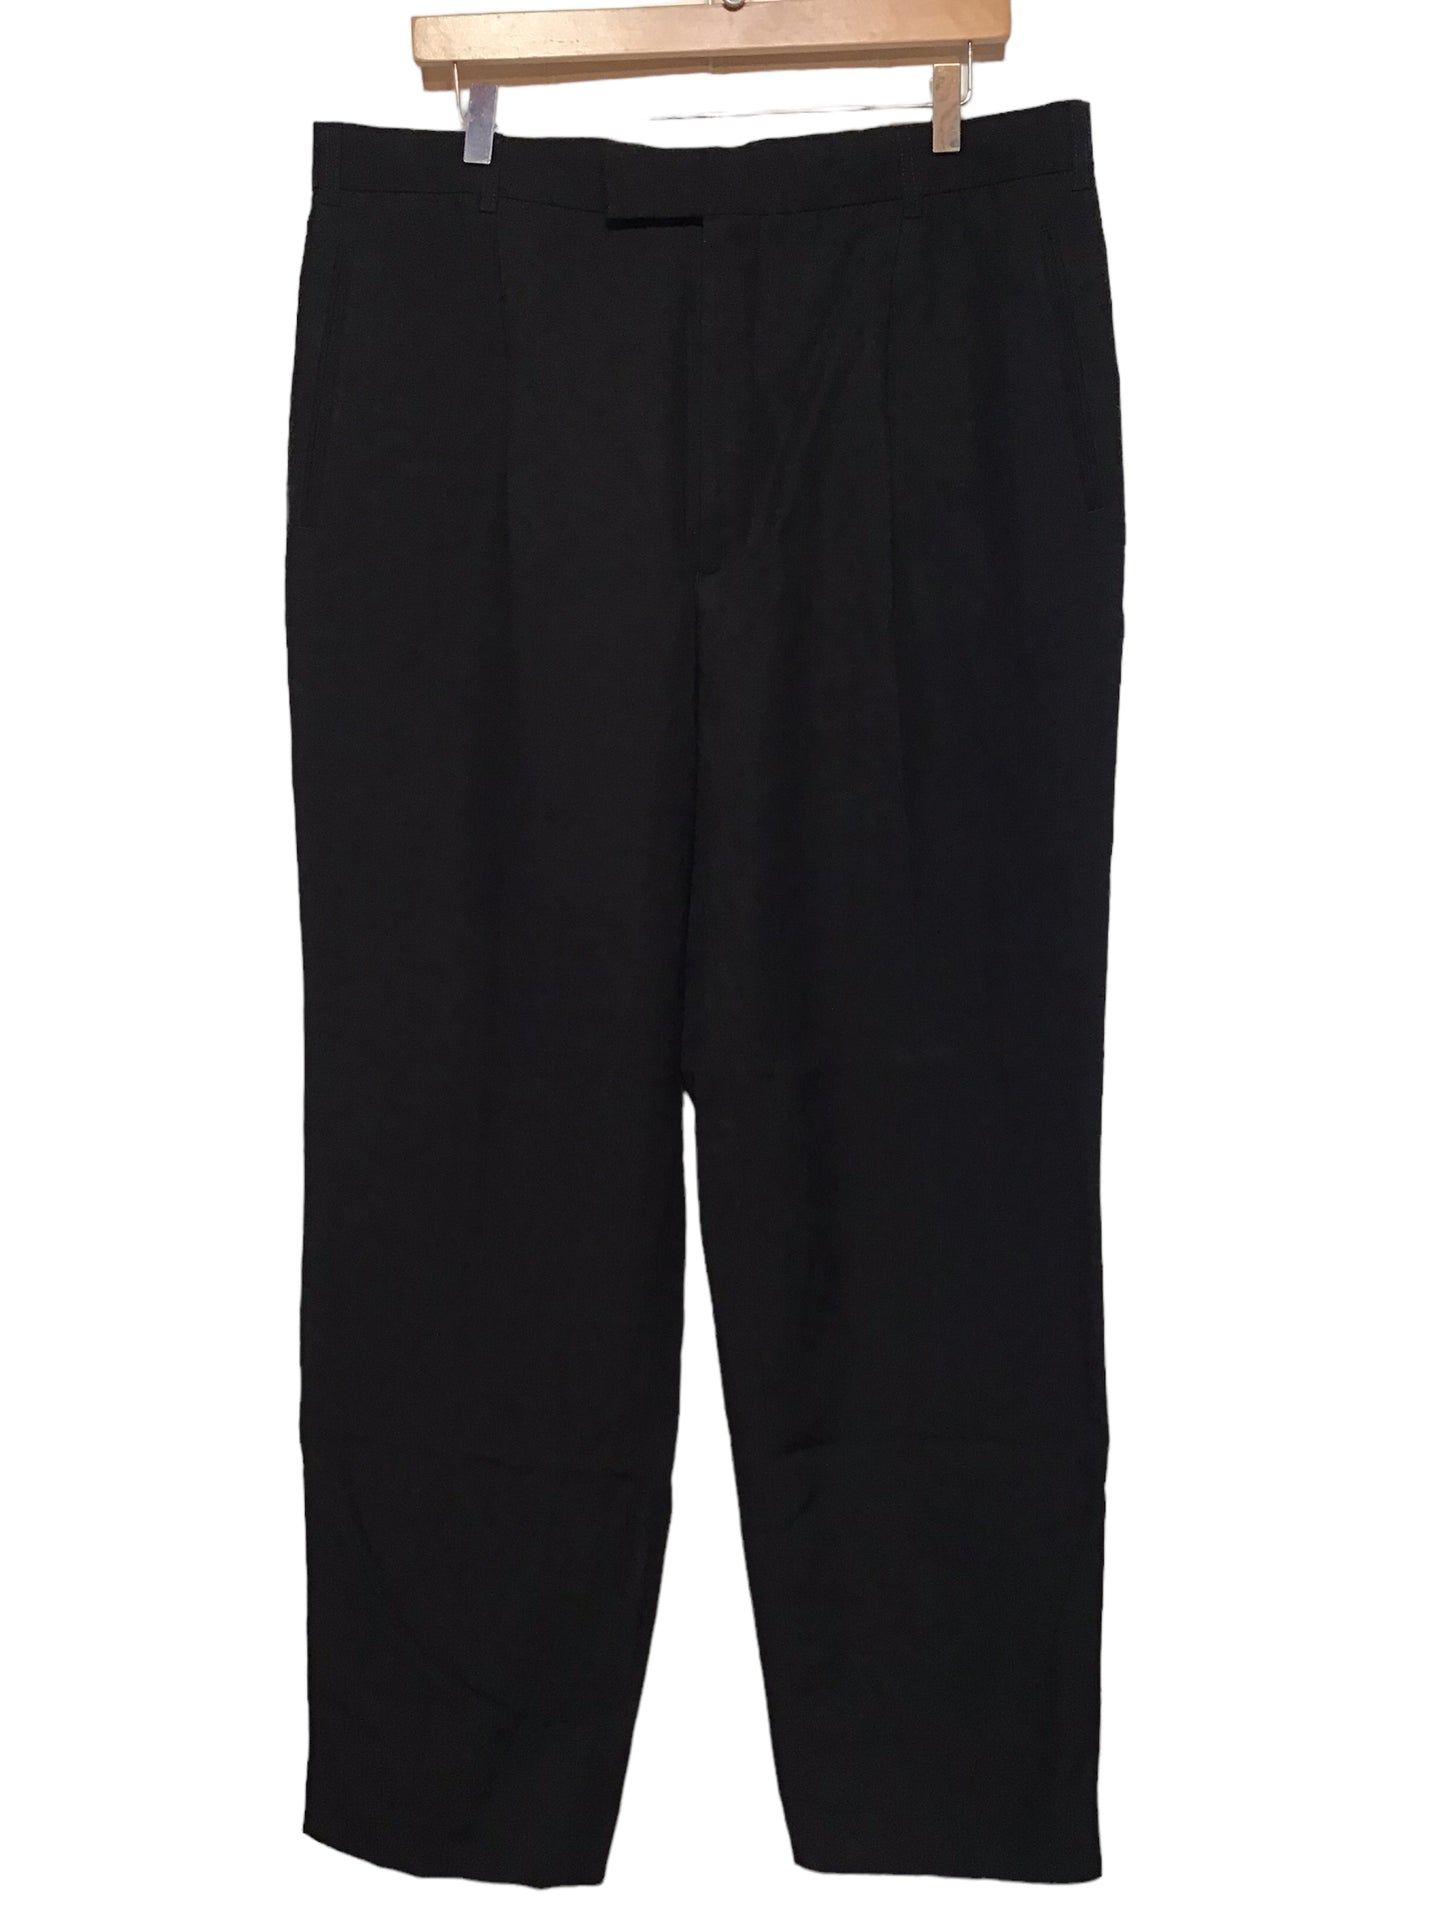 Men’s Suit Trousers (Size XXL)